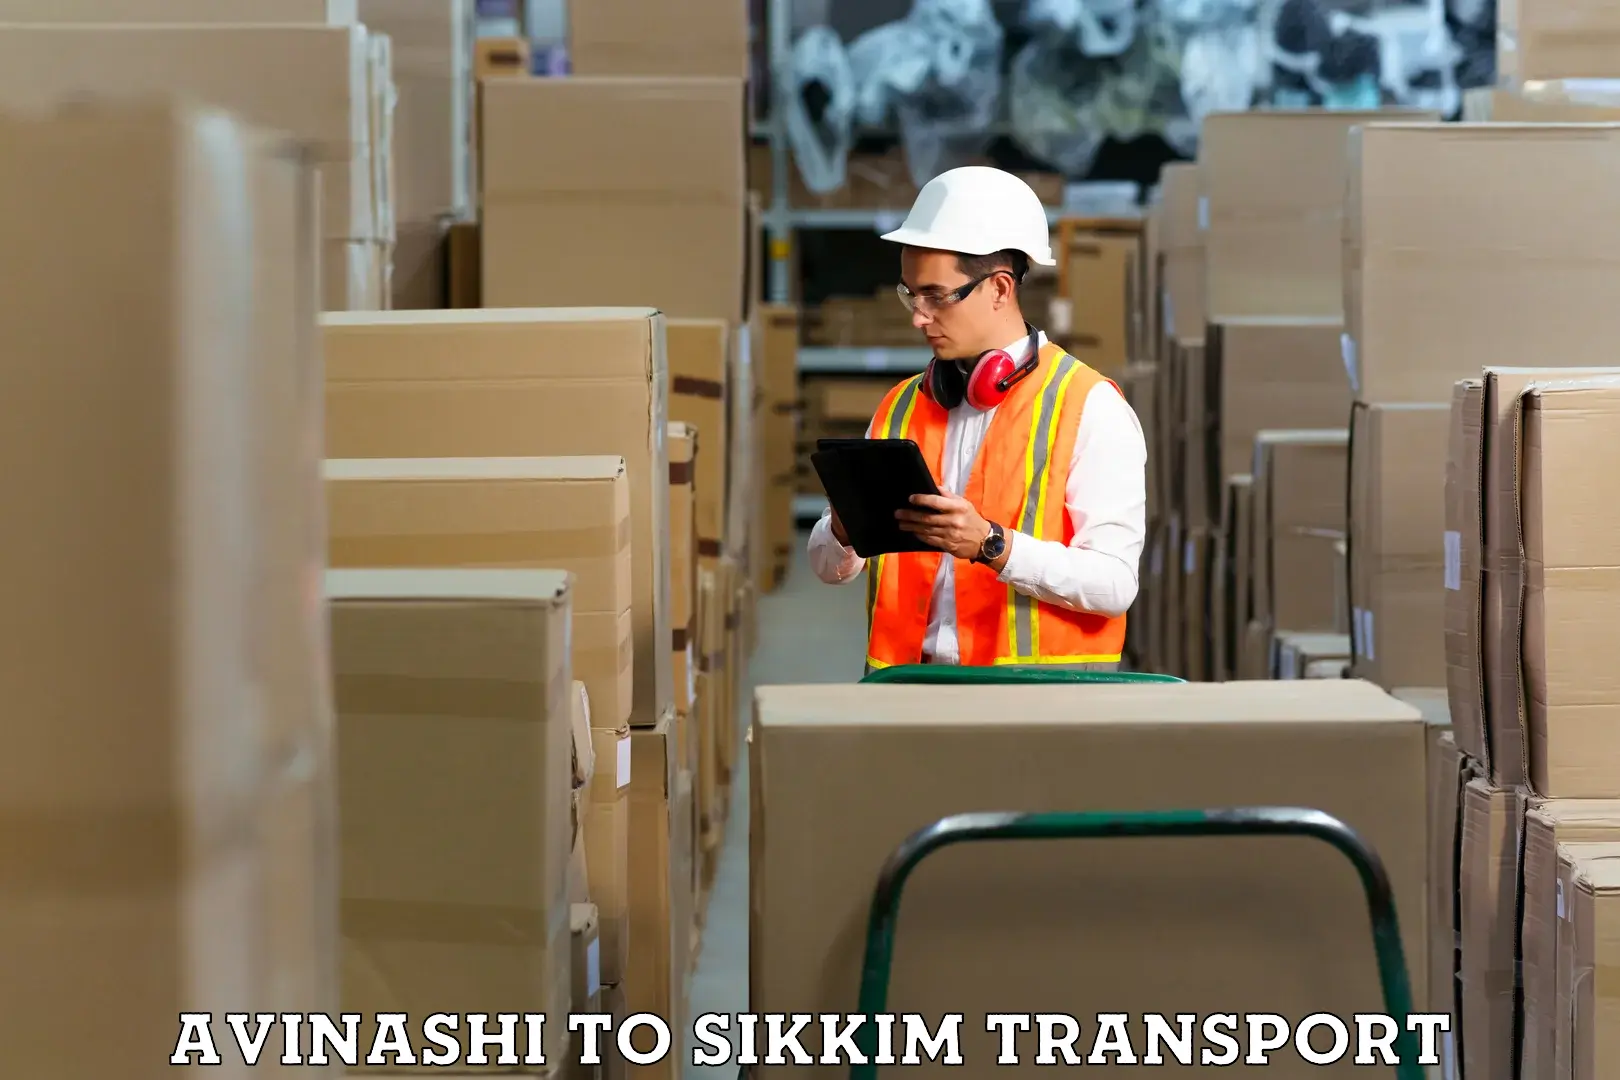 Nearest transport service Avinashi to South Sikkim